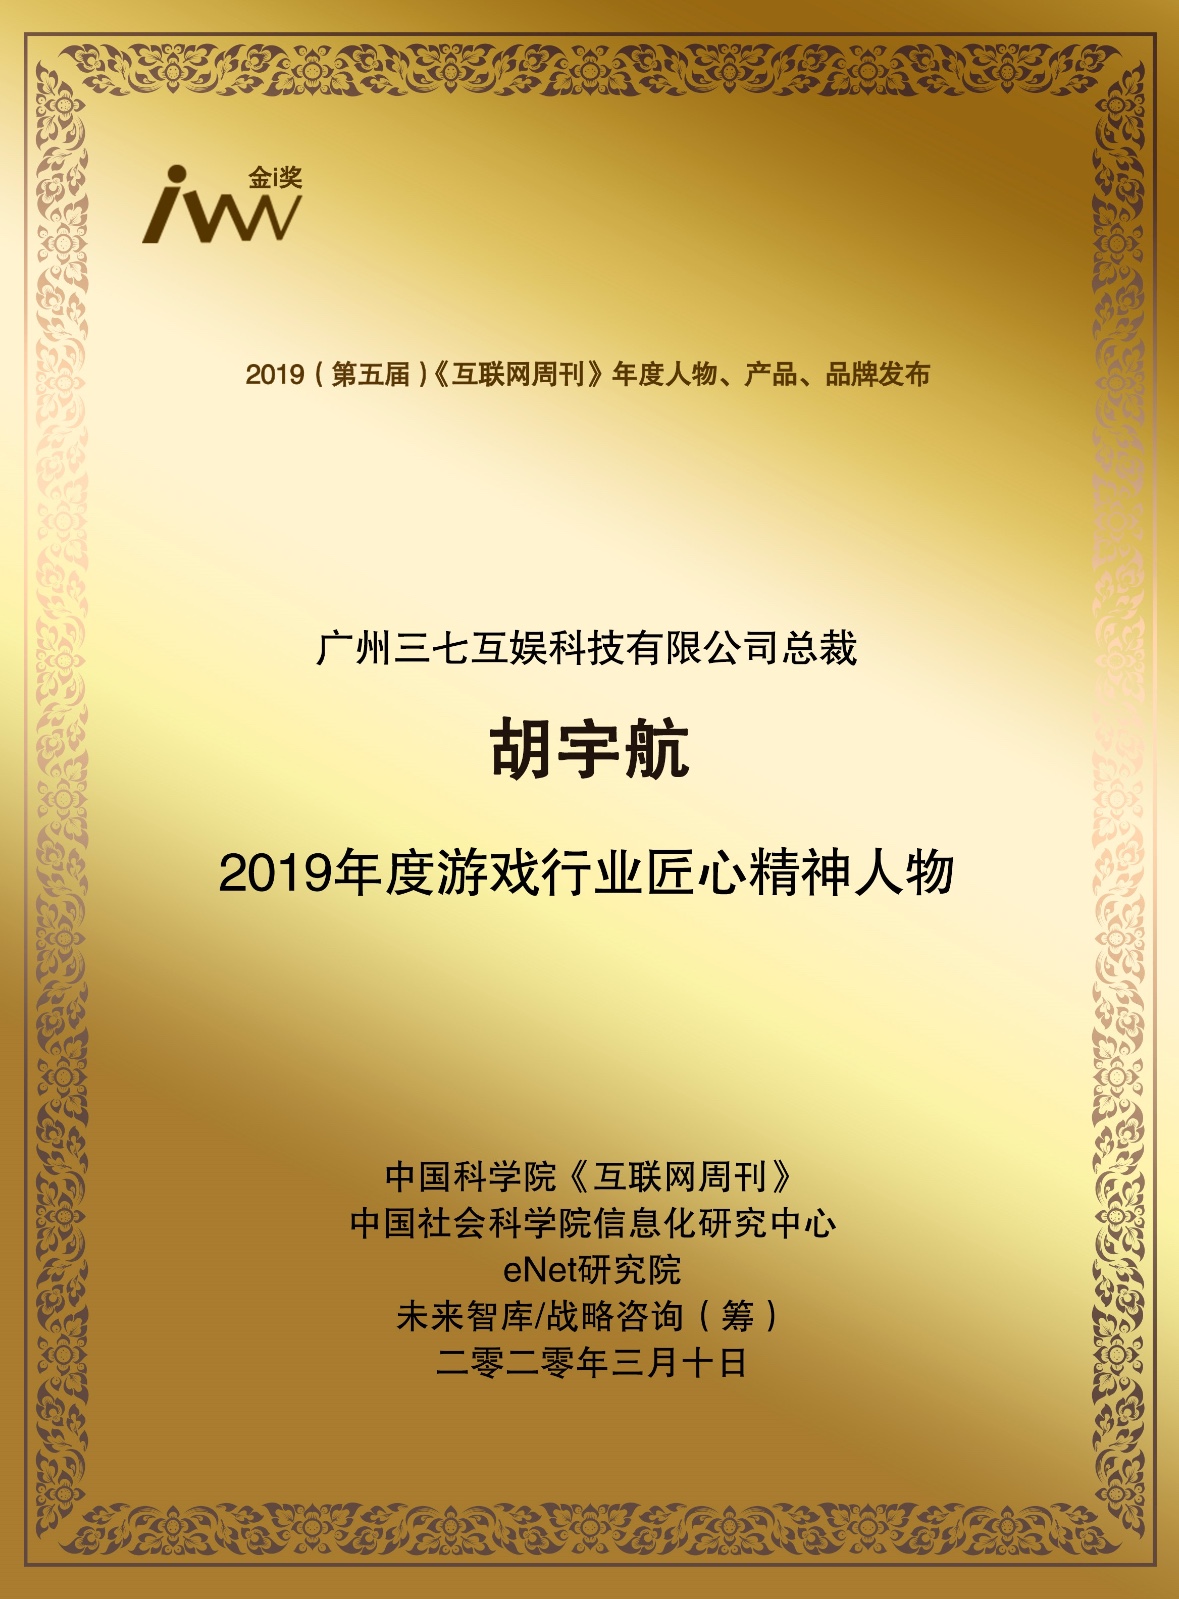 三七游戏总裁胡宇航获评互联网周刊2019年年度人物大奖_行业